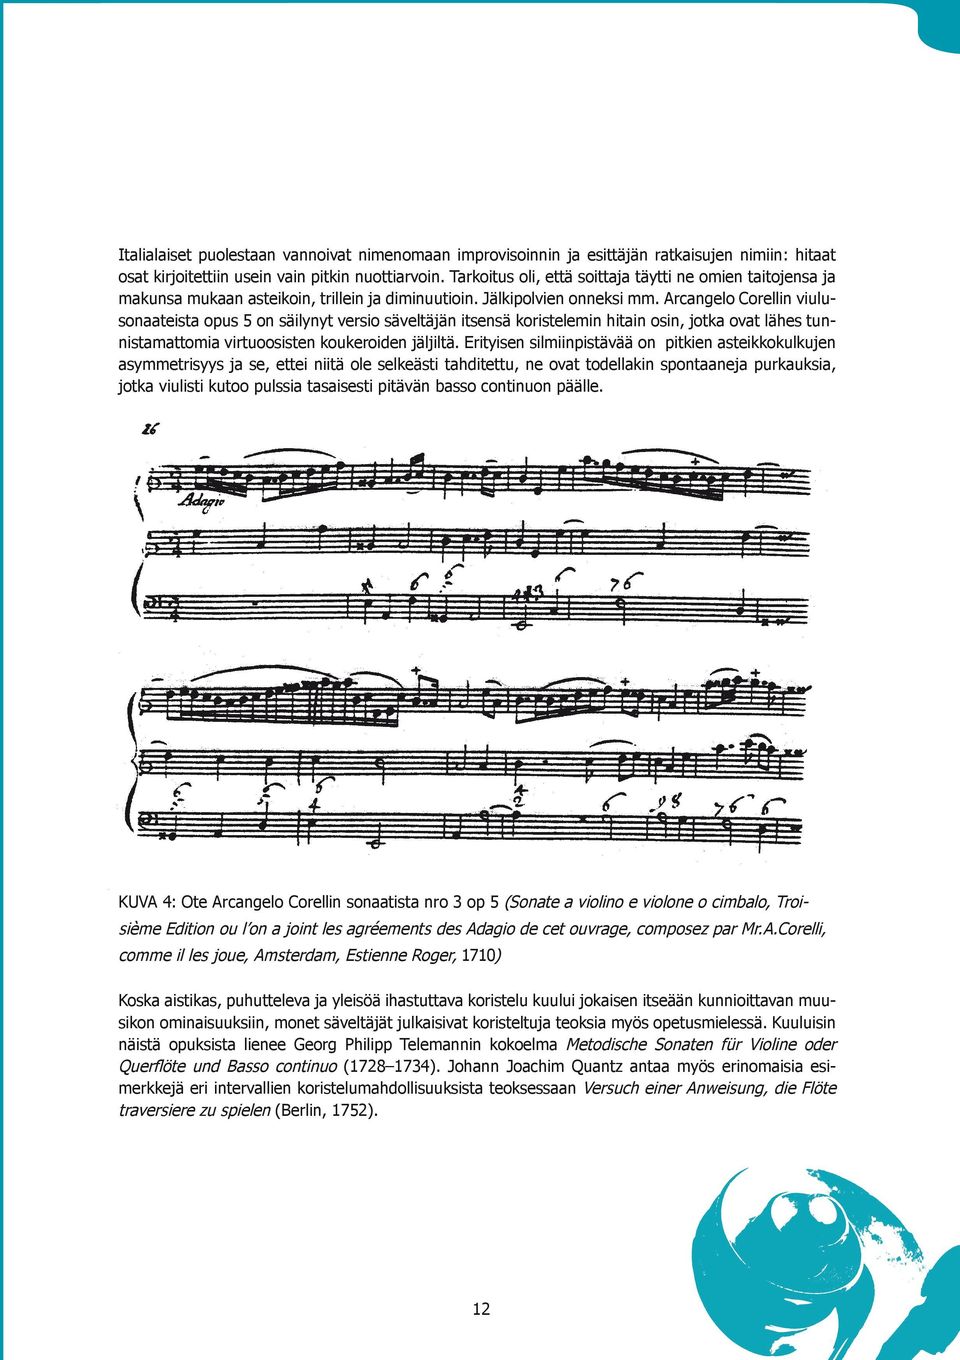 Arcangelo Corellin viulusonaateista opus 5 on säilynyt versio säveltäjän itsensä koristelemin hitain osin, jotka ovat lähes tunnistamattomia virtuoosisten koukeroiden jäljiltä.